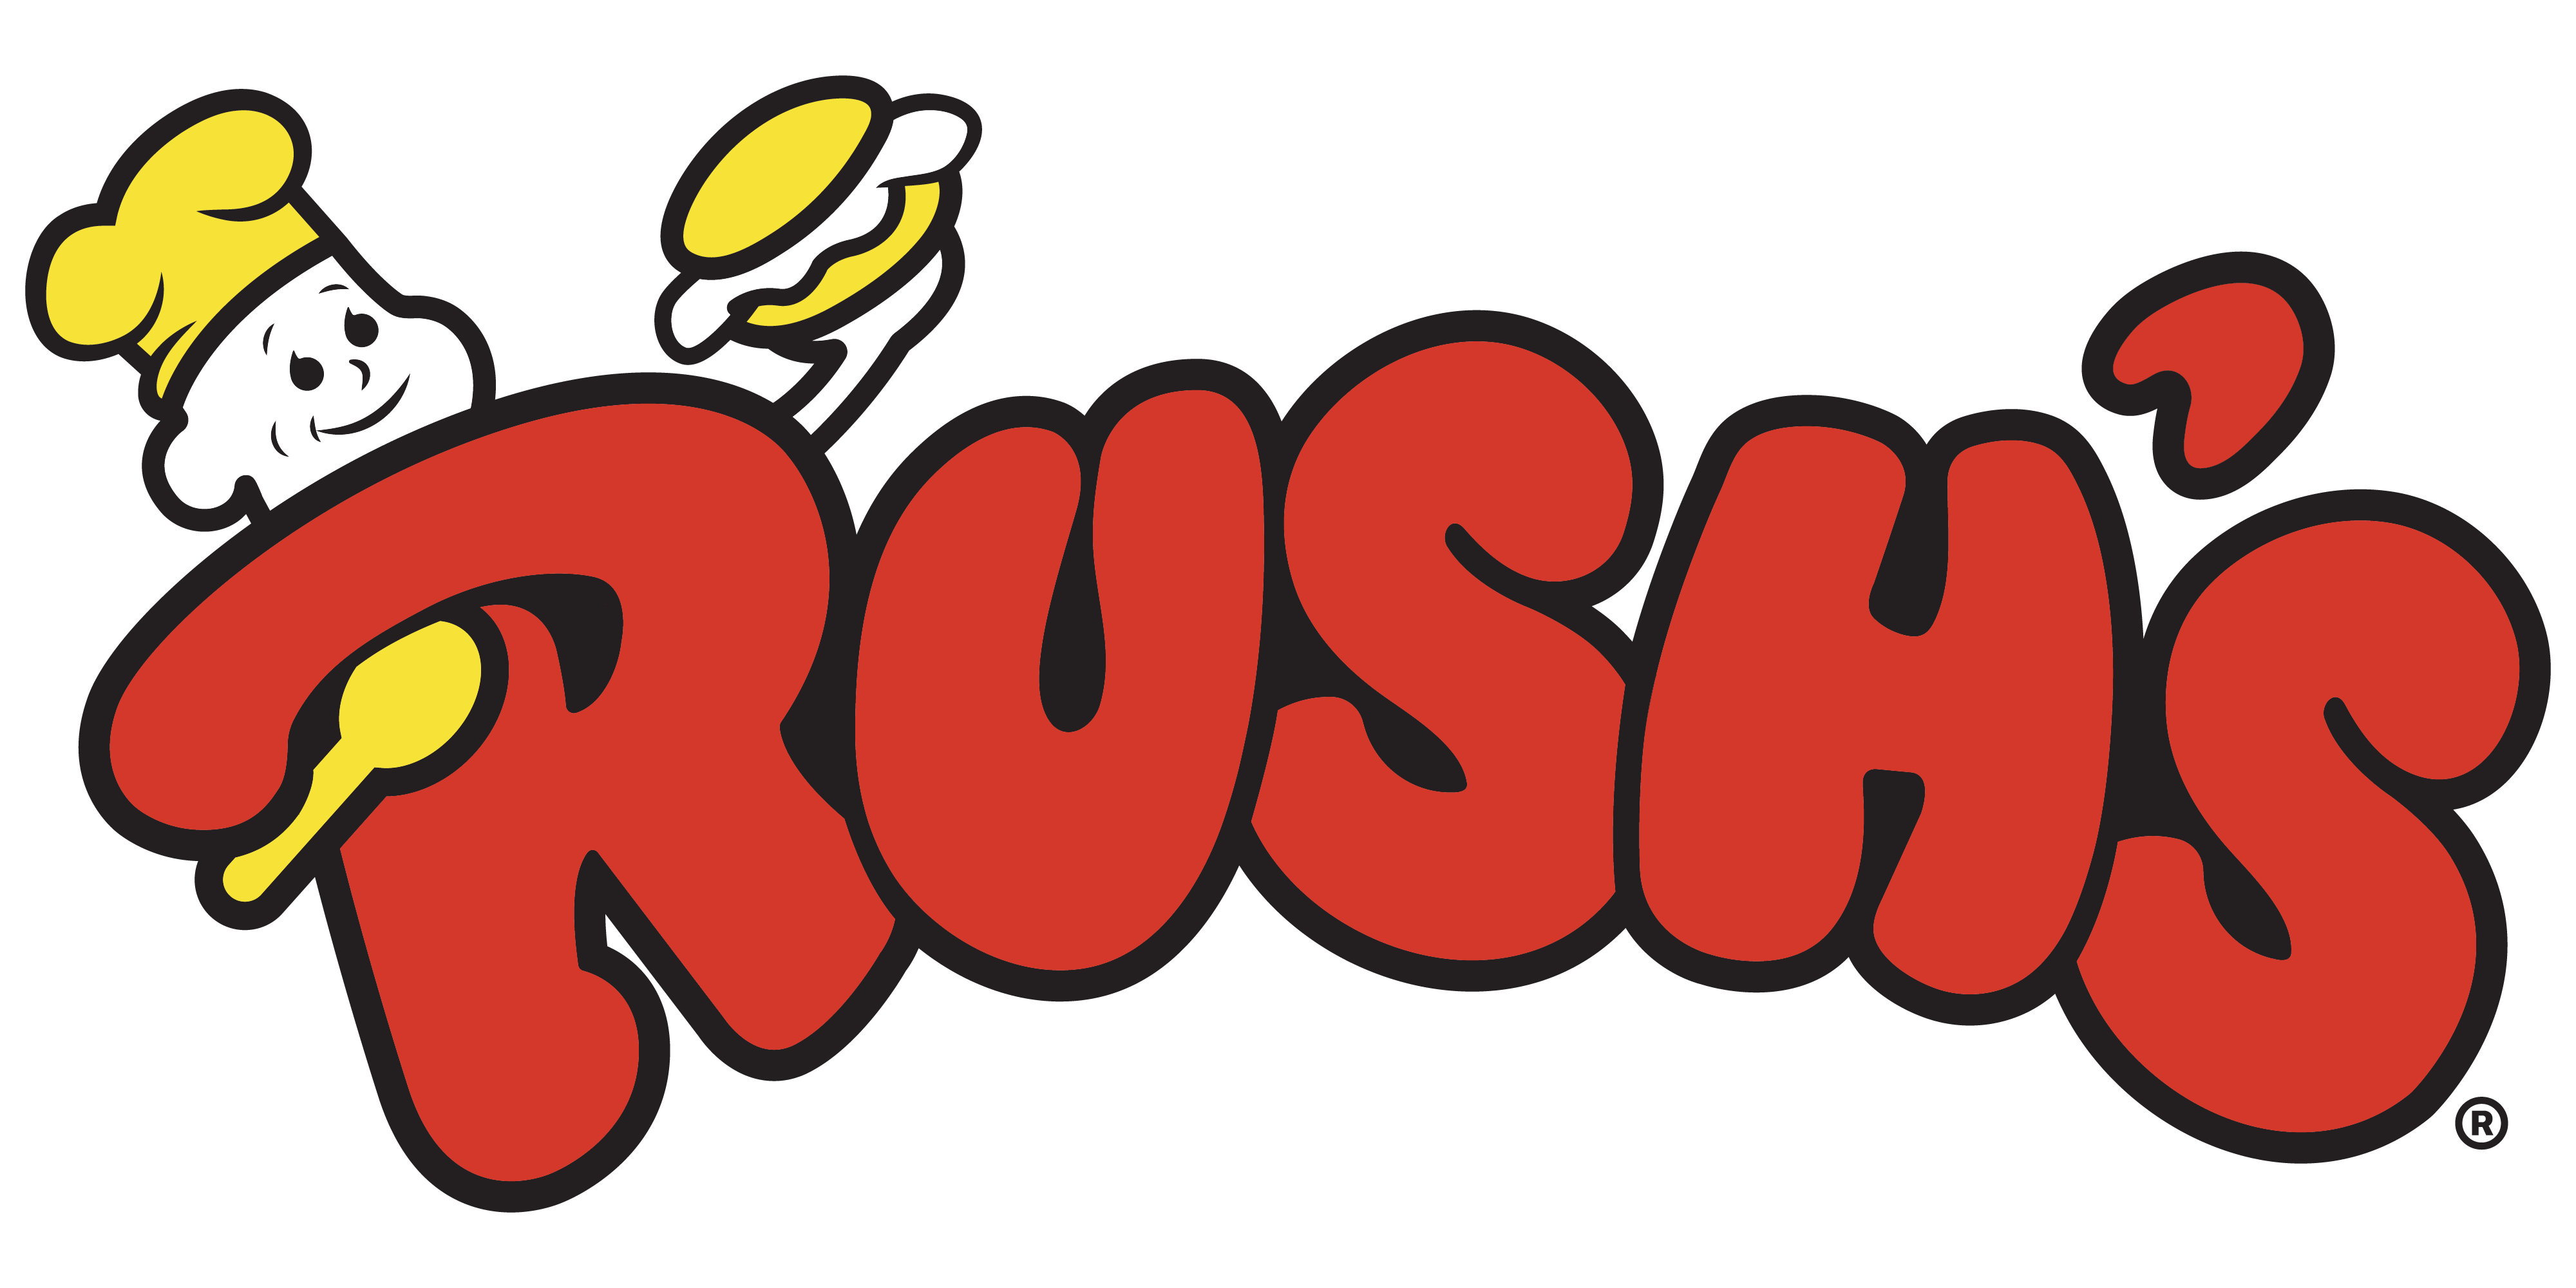 Rush's